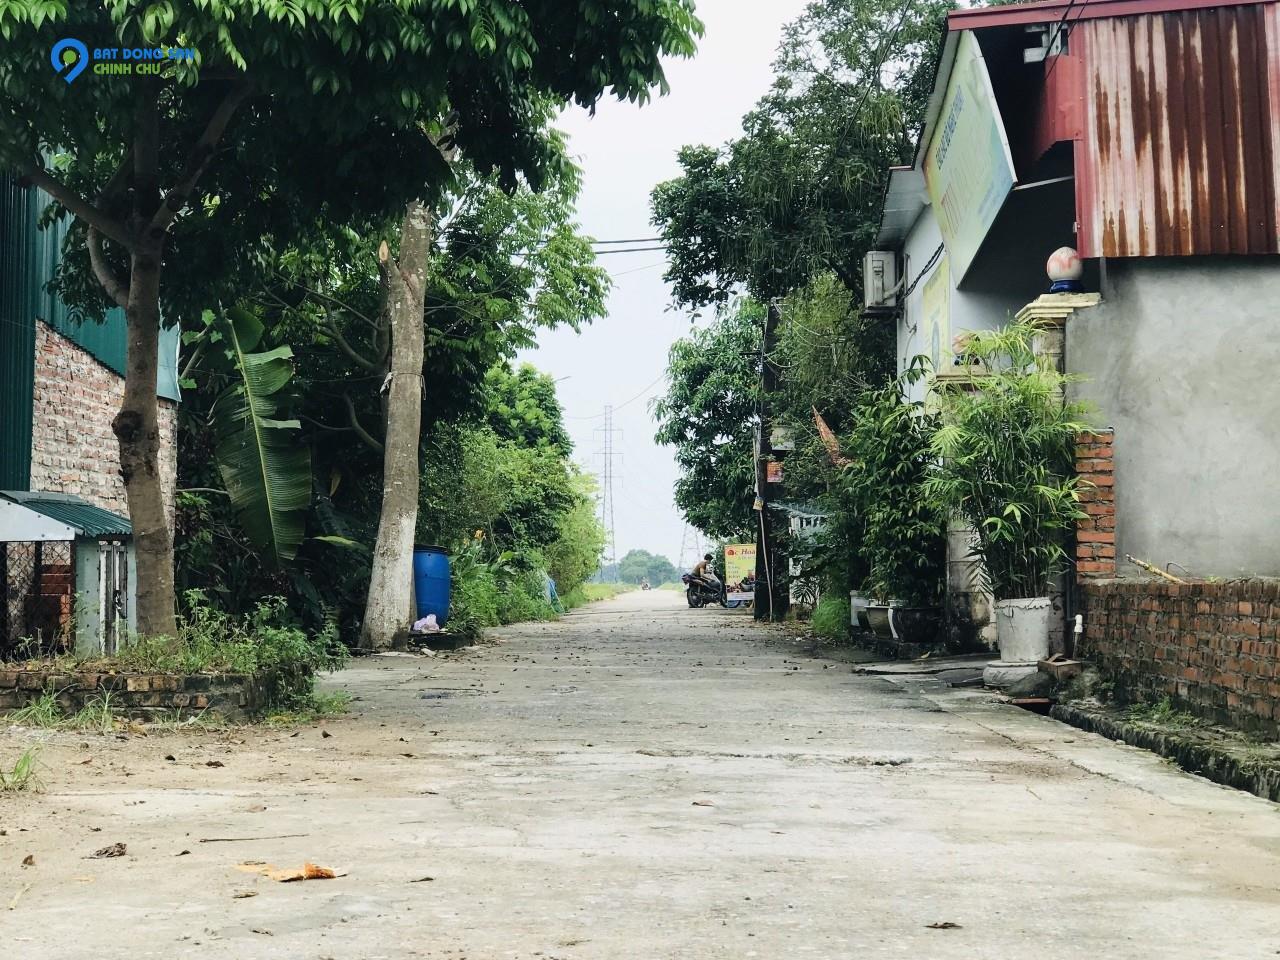 Bán 82,7m2 full thổ cư Đường Yên, Xuân Nộn, Đông Anh, Hà Nội. Đất bìa làng, ôtô tránh.